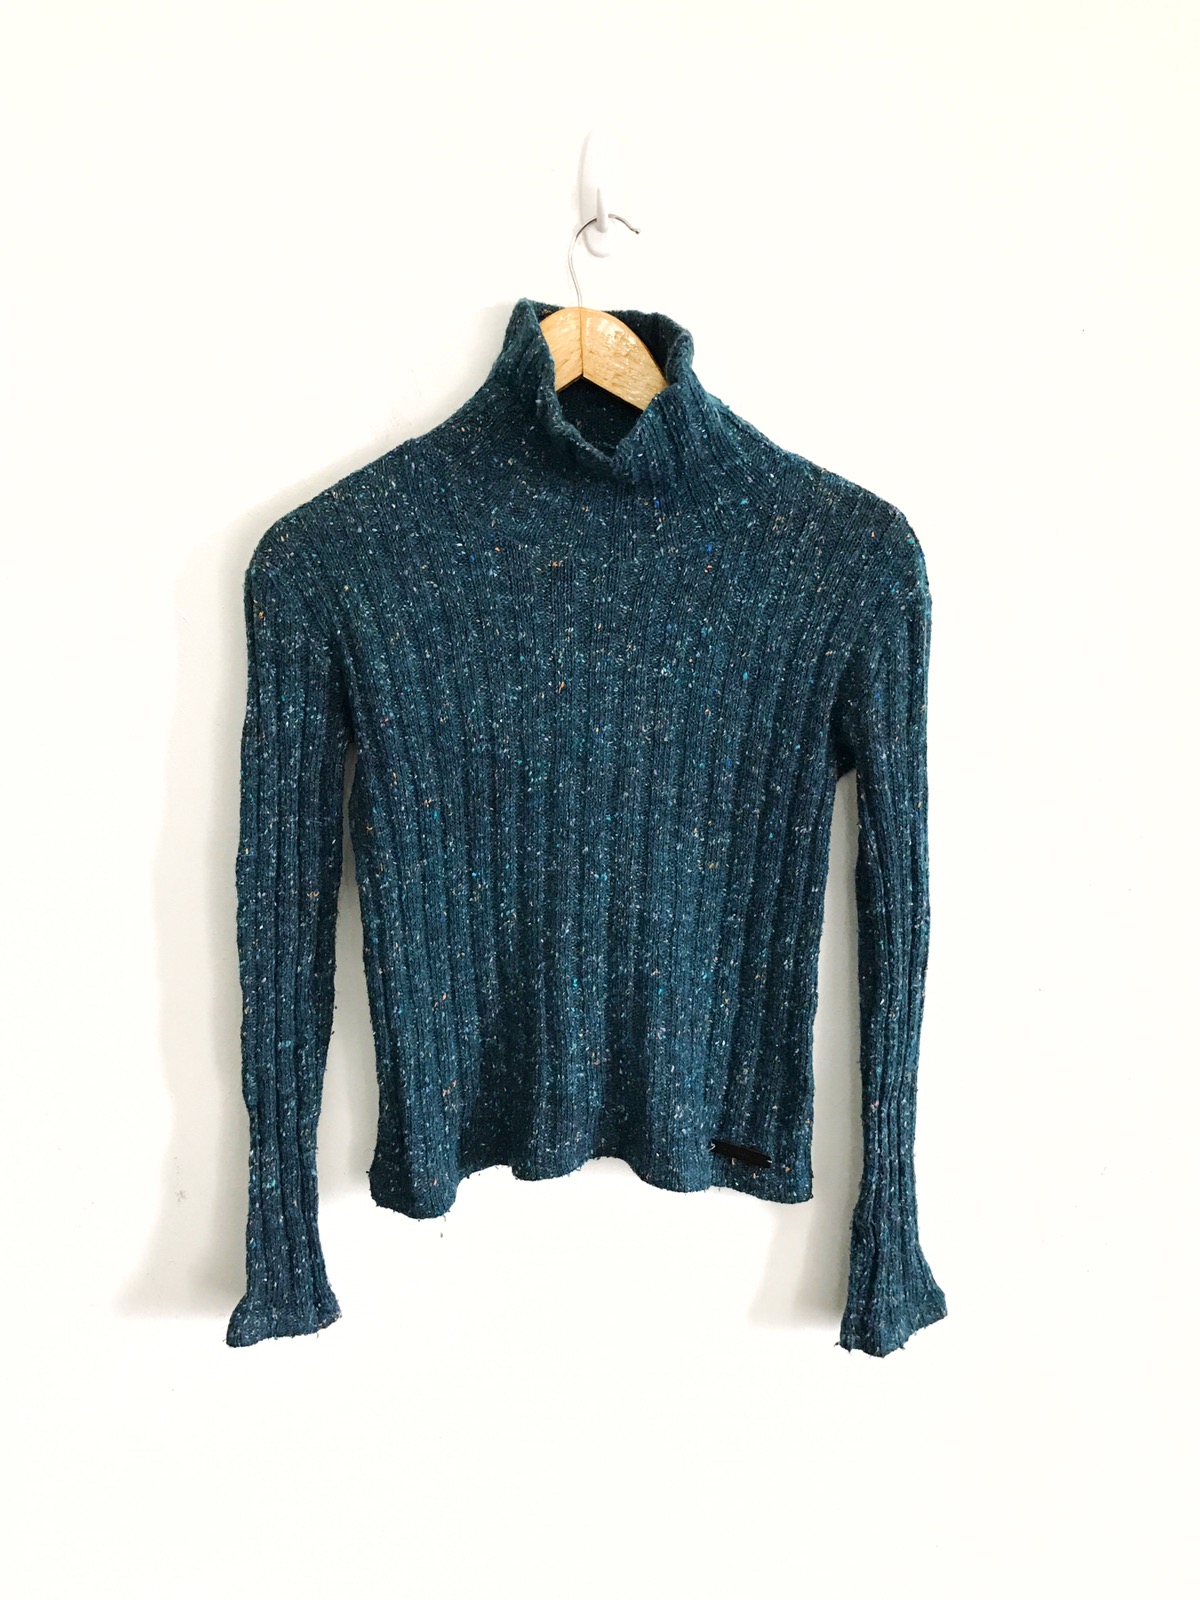 Hand Knit Sweater Jumper Armpit 16"x24" - 2